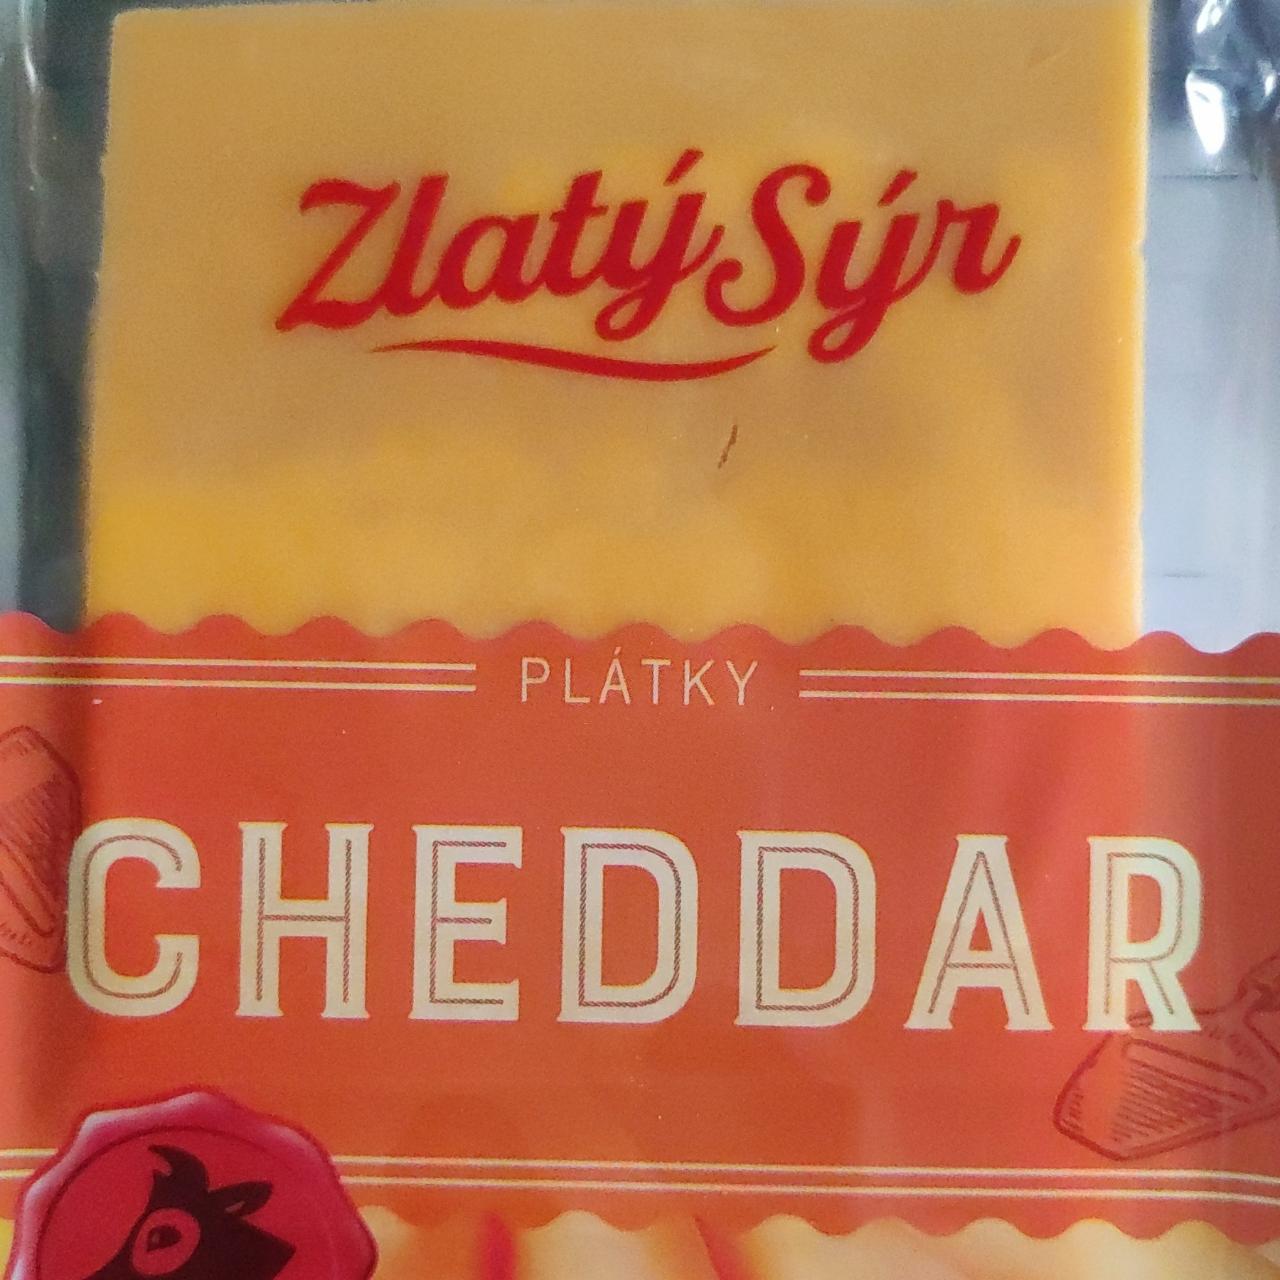 Képek - Cheddar plátky Zlatý sýr